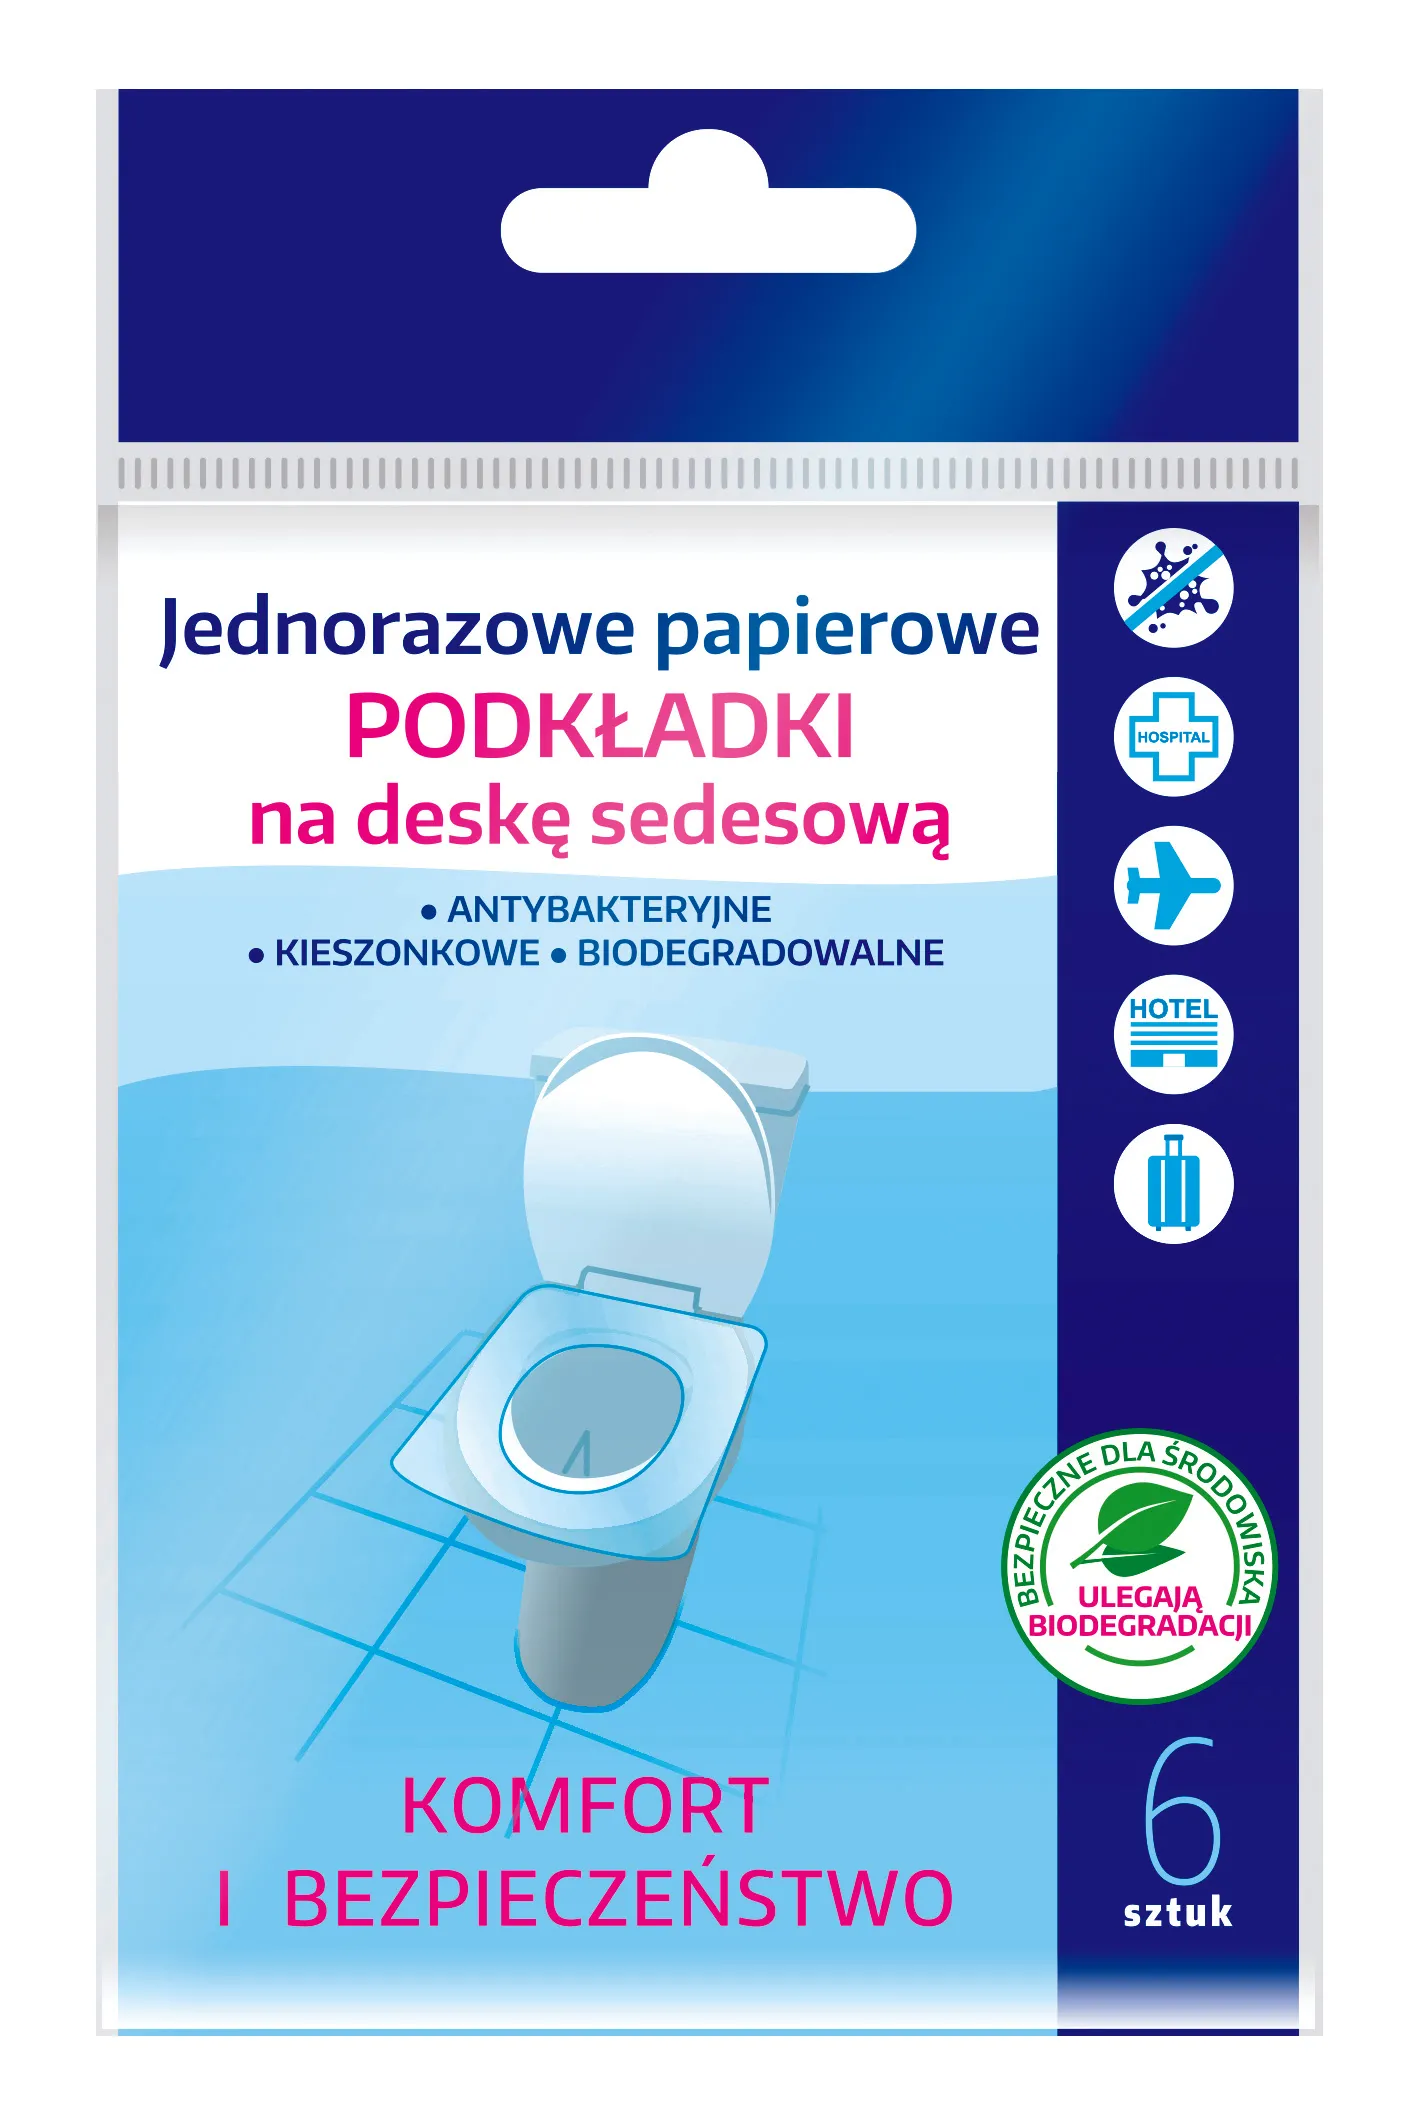 Intervion Higieniczne podkładki toaletowe, 6 szt.